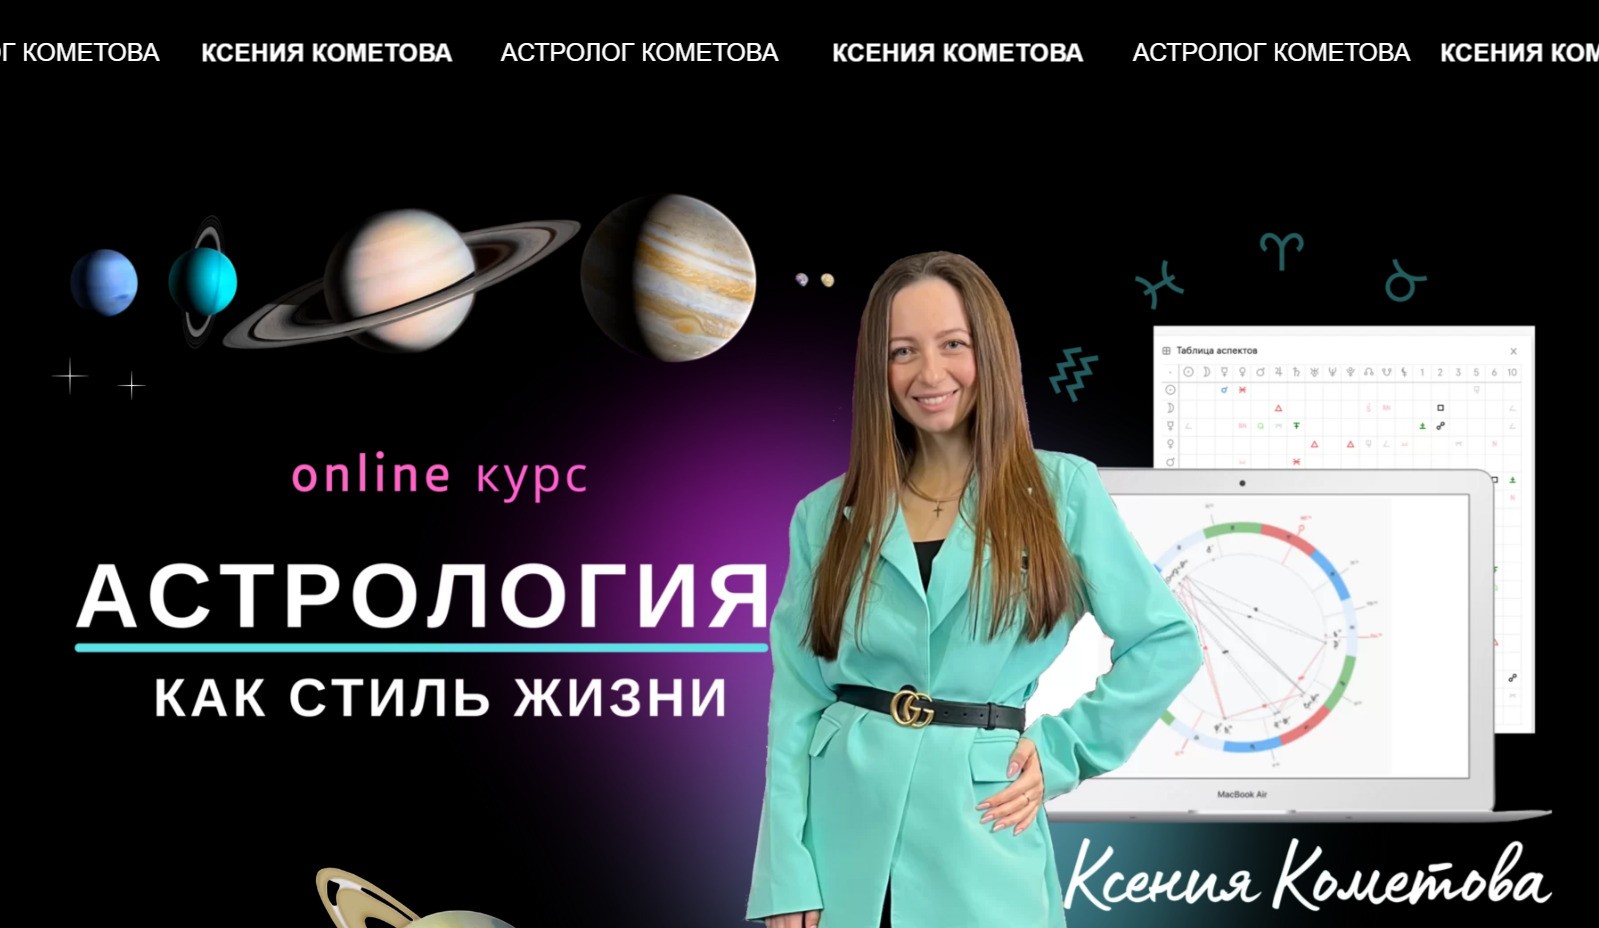 Астролог Ксения Кометова сайт